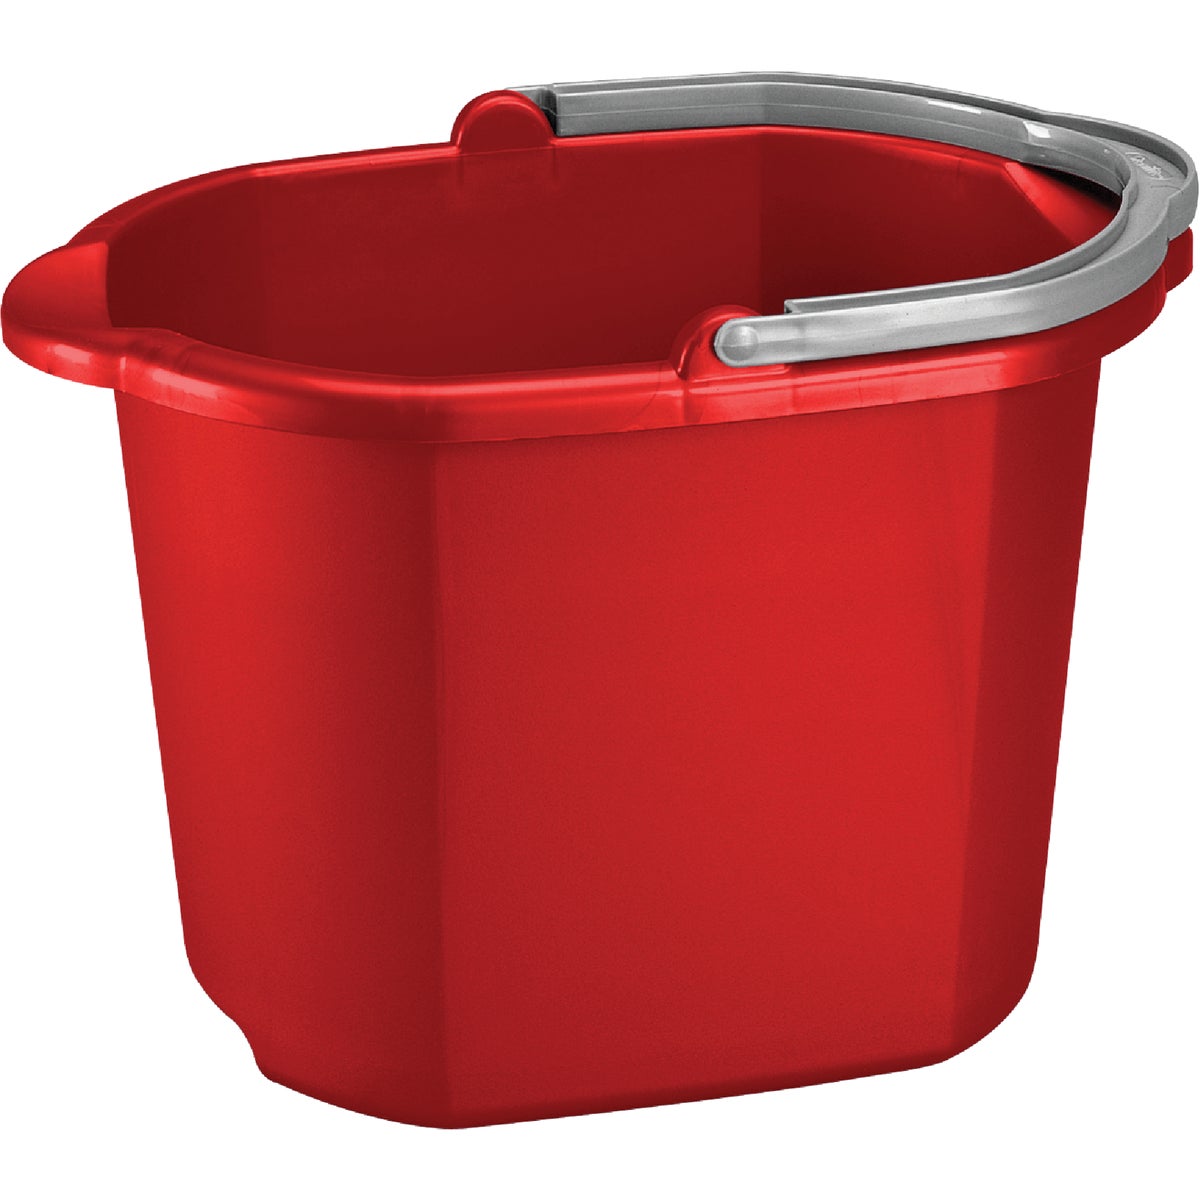 Sterilite 16 Qt. Red Dual Spout Bucket